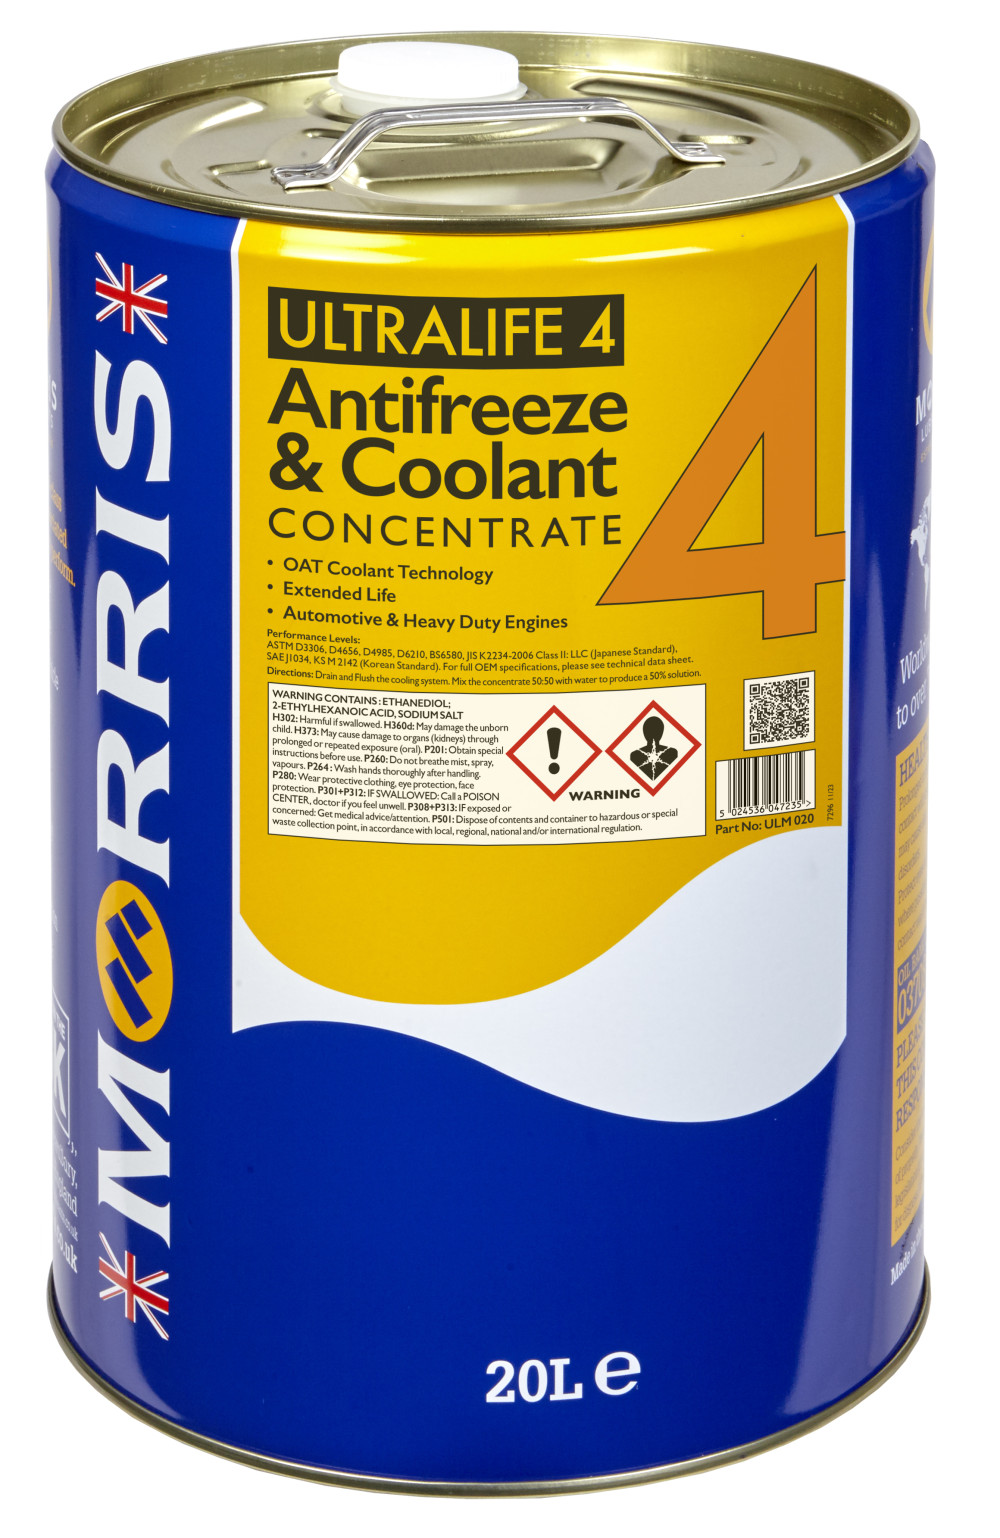 Ultralife 4 Long Life OAT Antifreeze Coolant